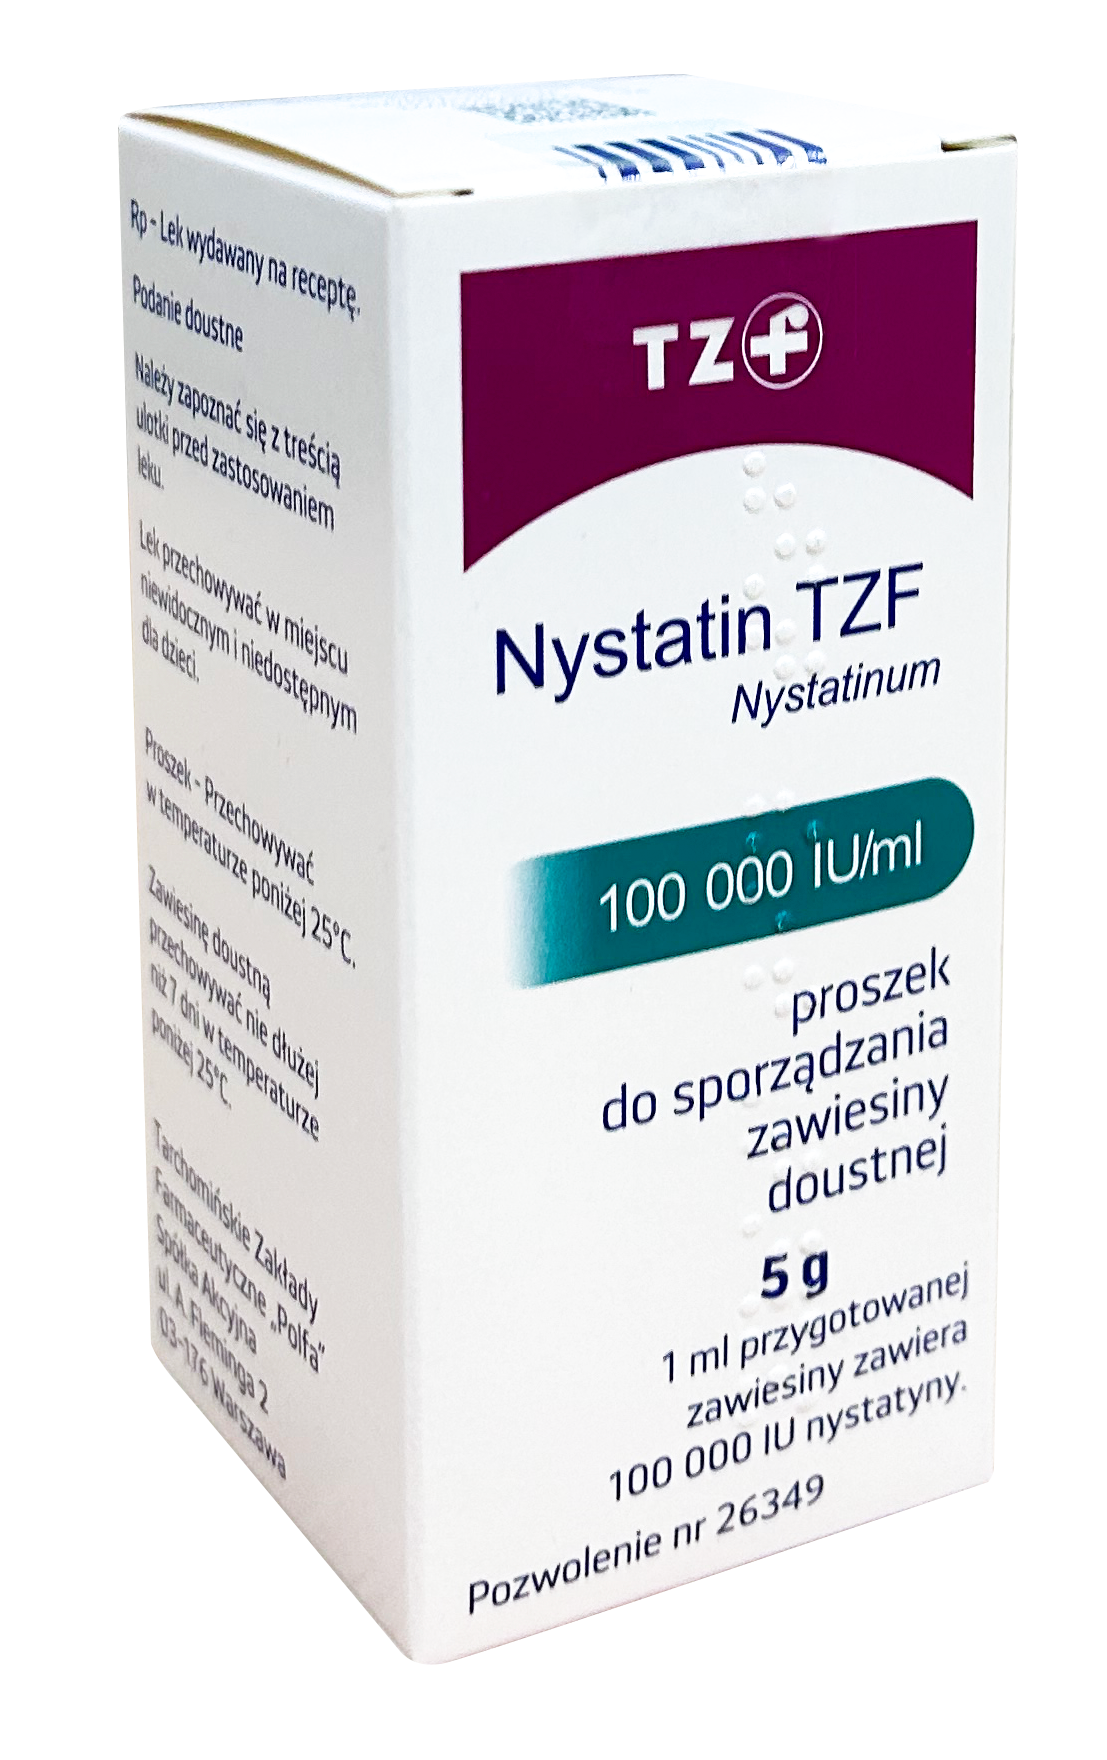 ნისტატინი TZF / Nystatin TZF